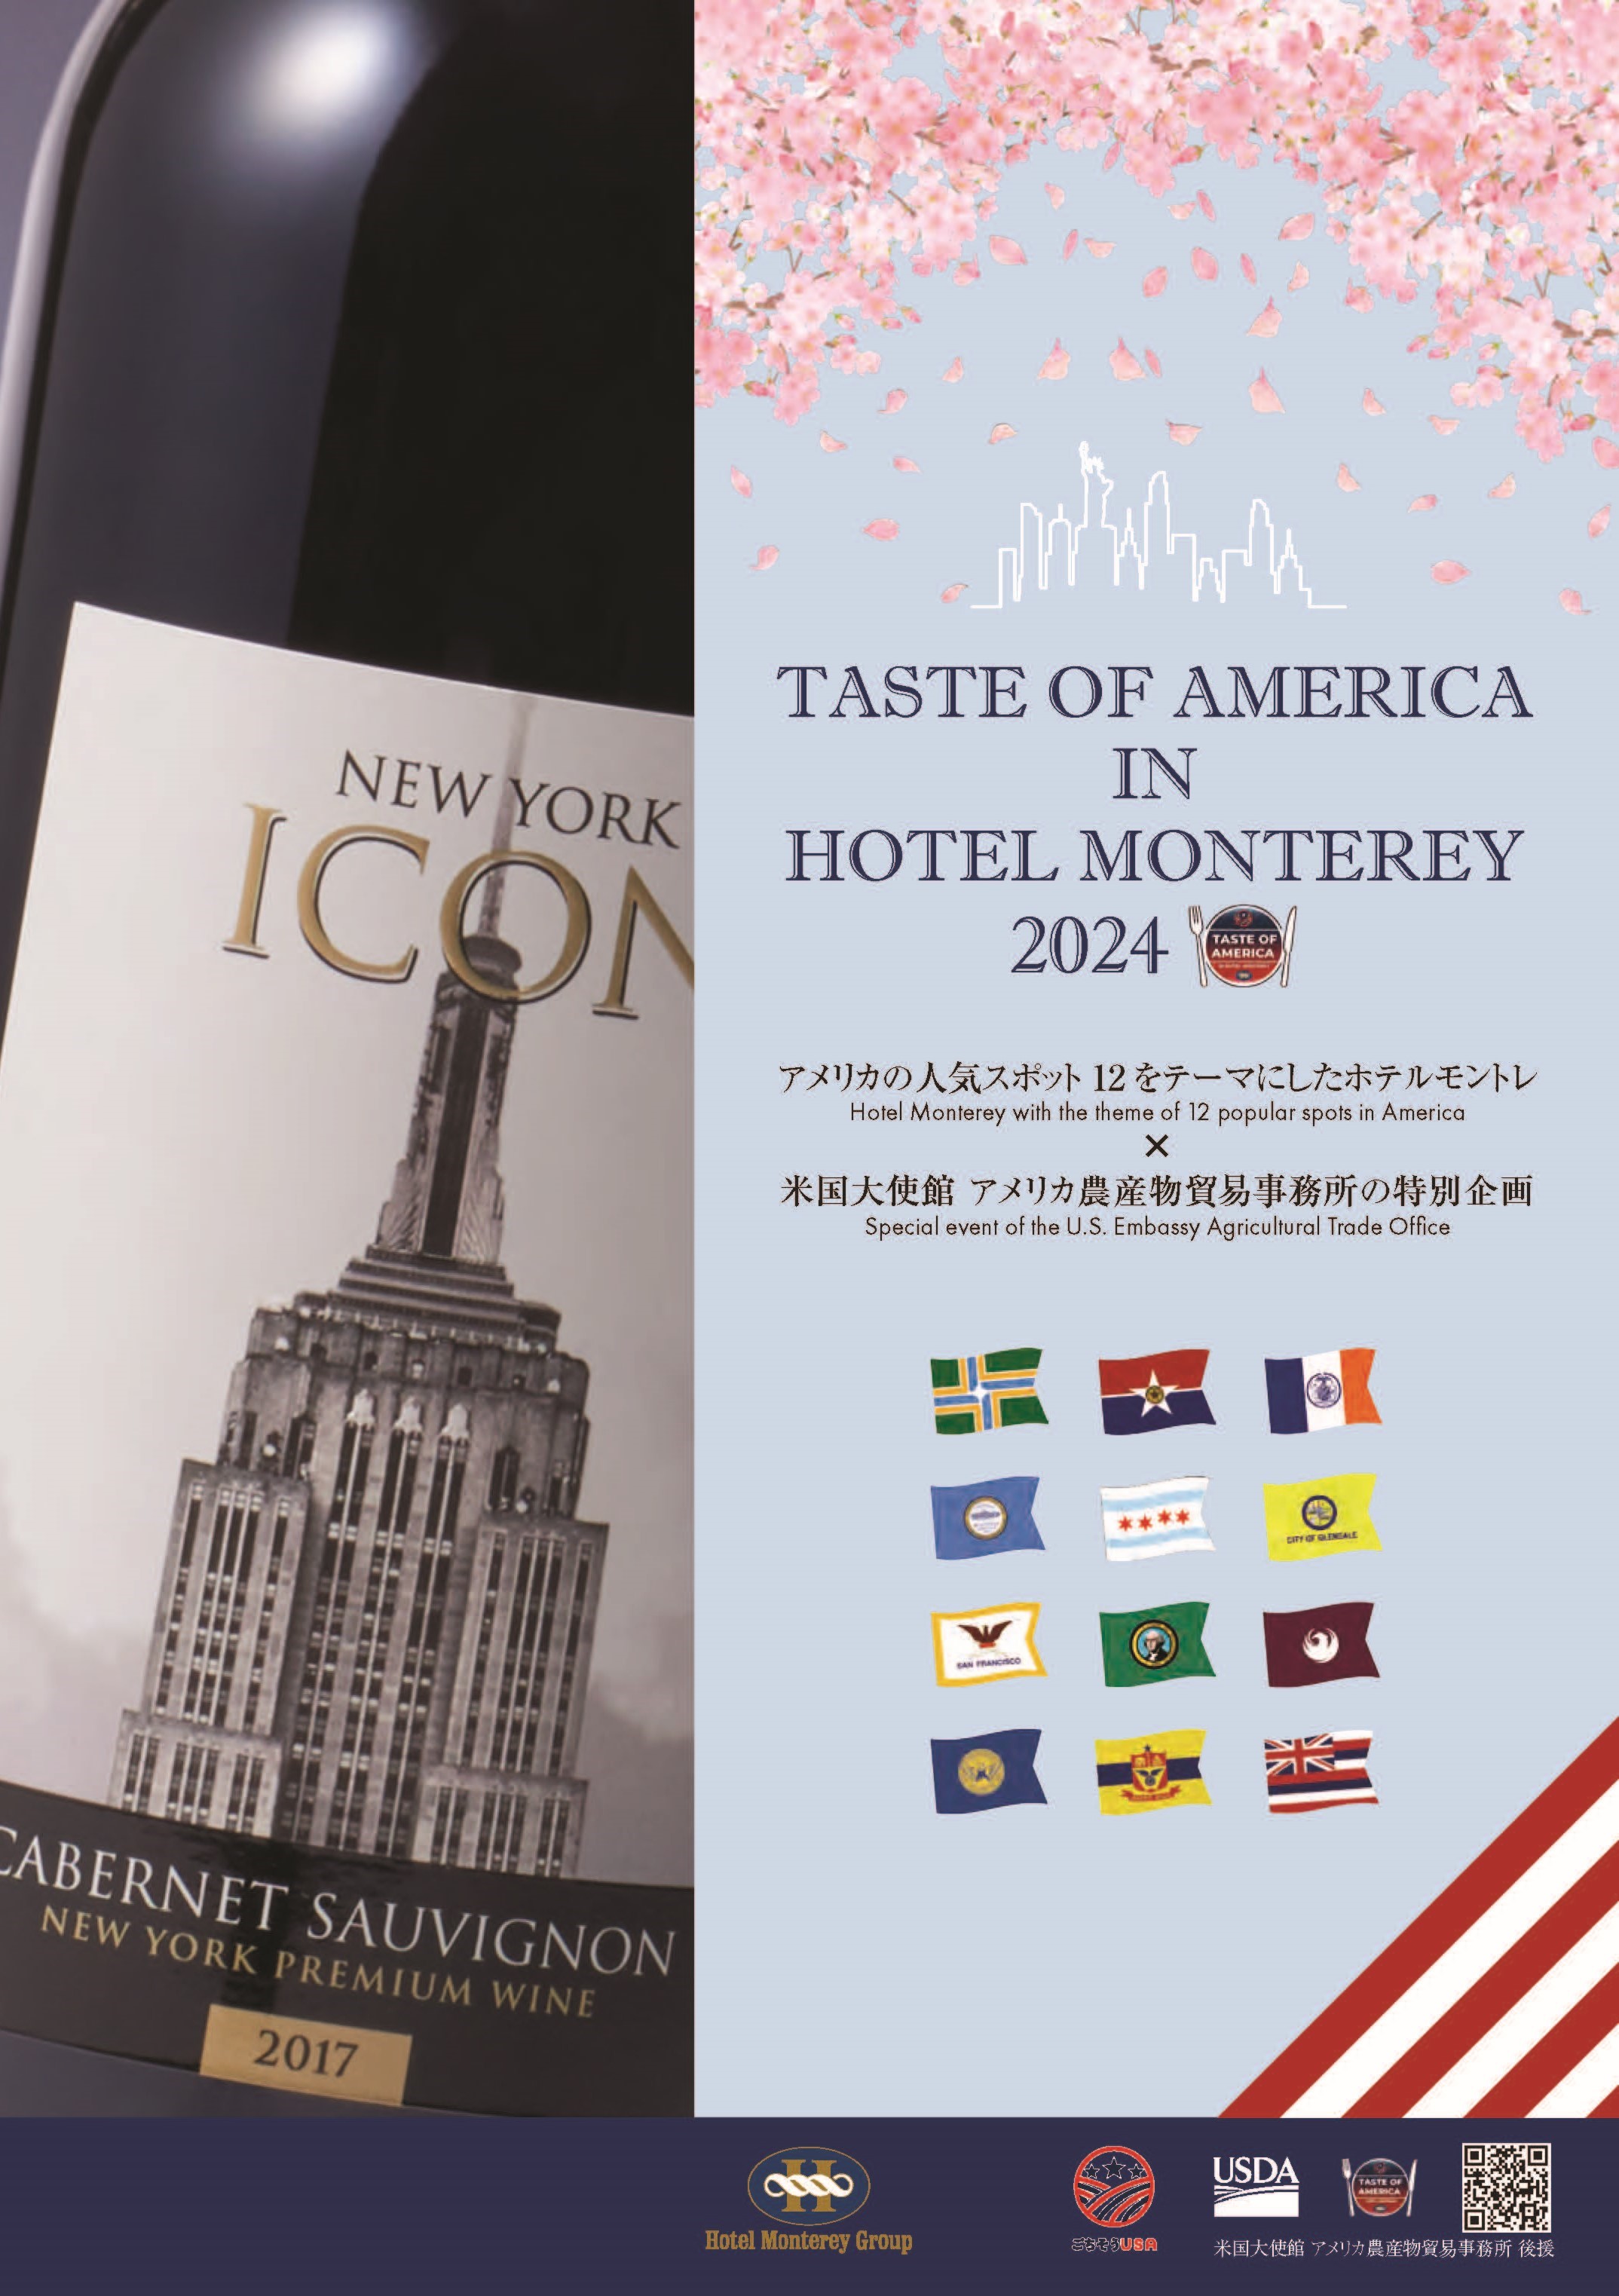 【期間限定】TASTE OF AMERICA IN HOTEL MONTEREY 2024 ～ホテルモントレの全国13のレストランでニューヨークワインを提供～